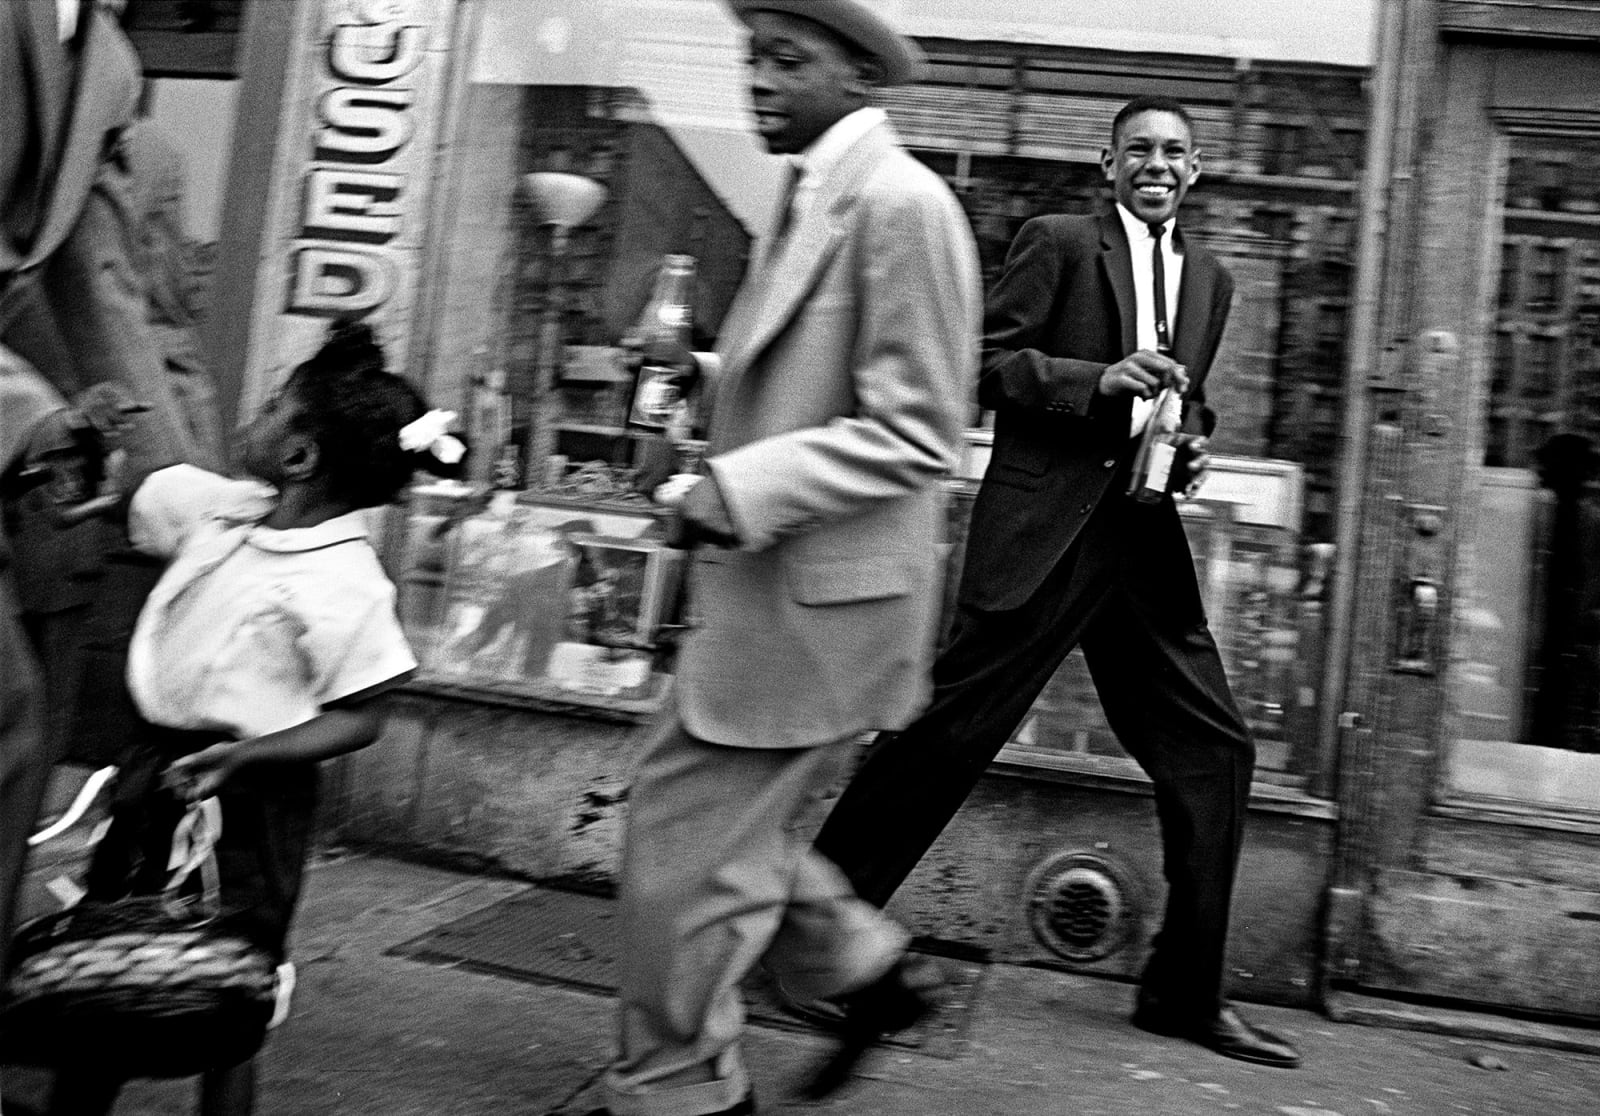 William Klein, Moves + Pepsi, Harlem, 1955